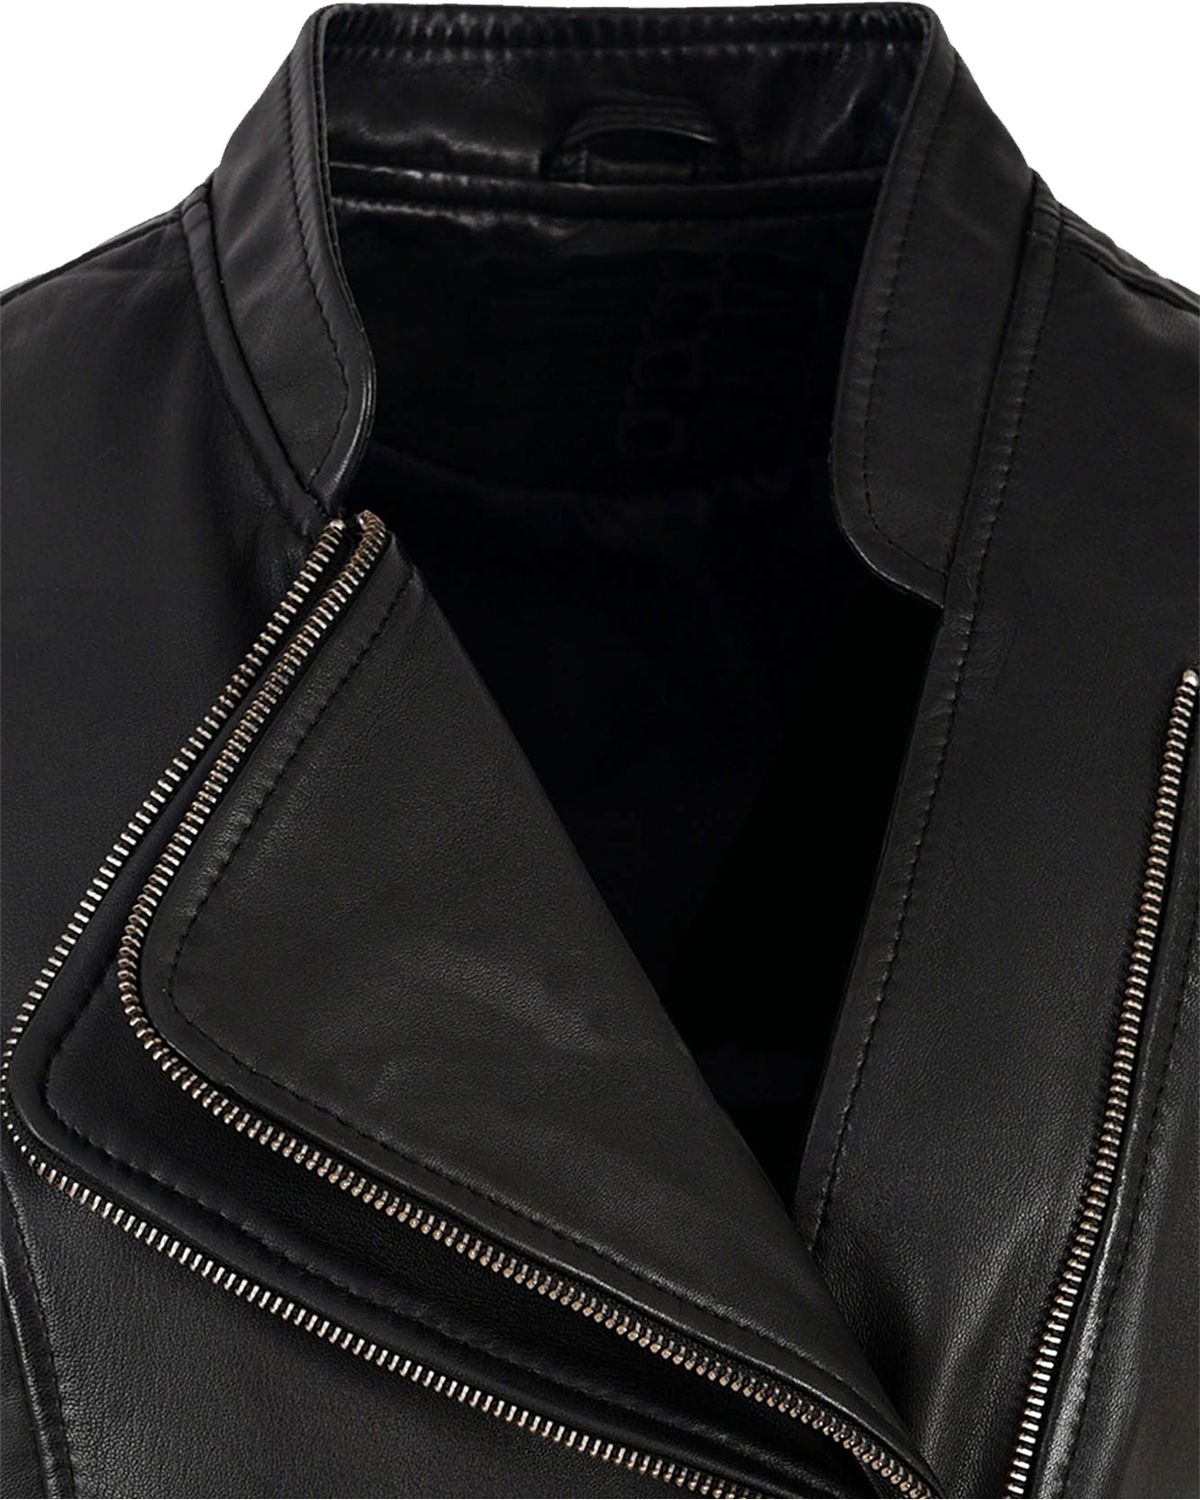 Womens Black Real Sheepskin Leather Biker Vest | Elite Jacket